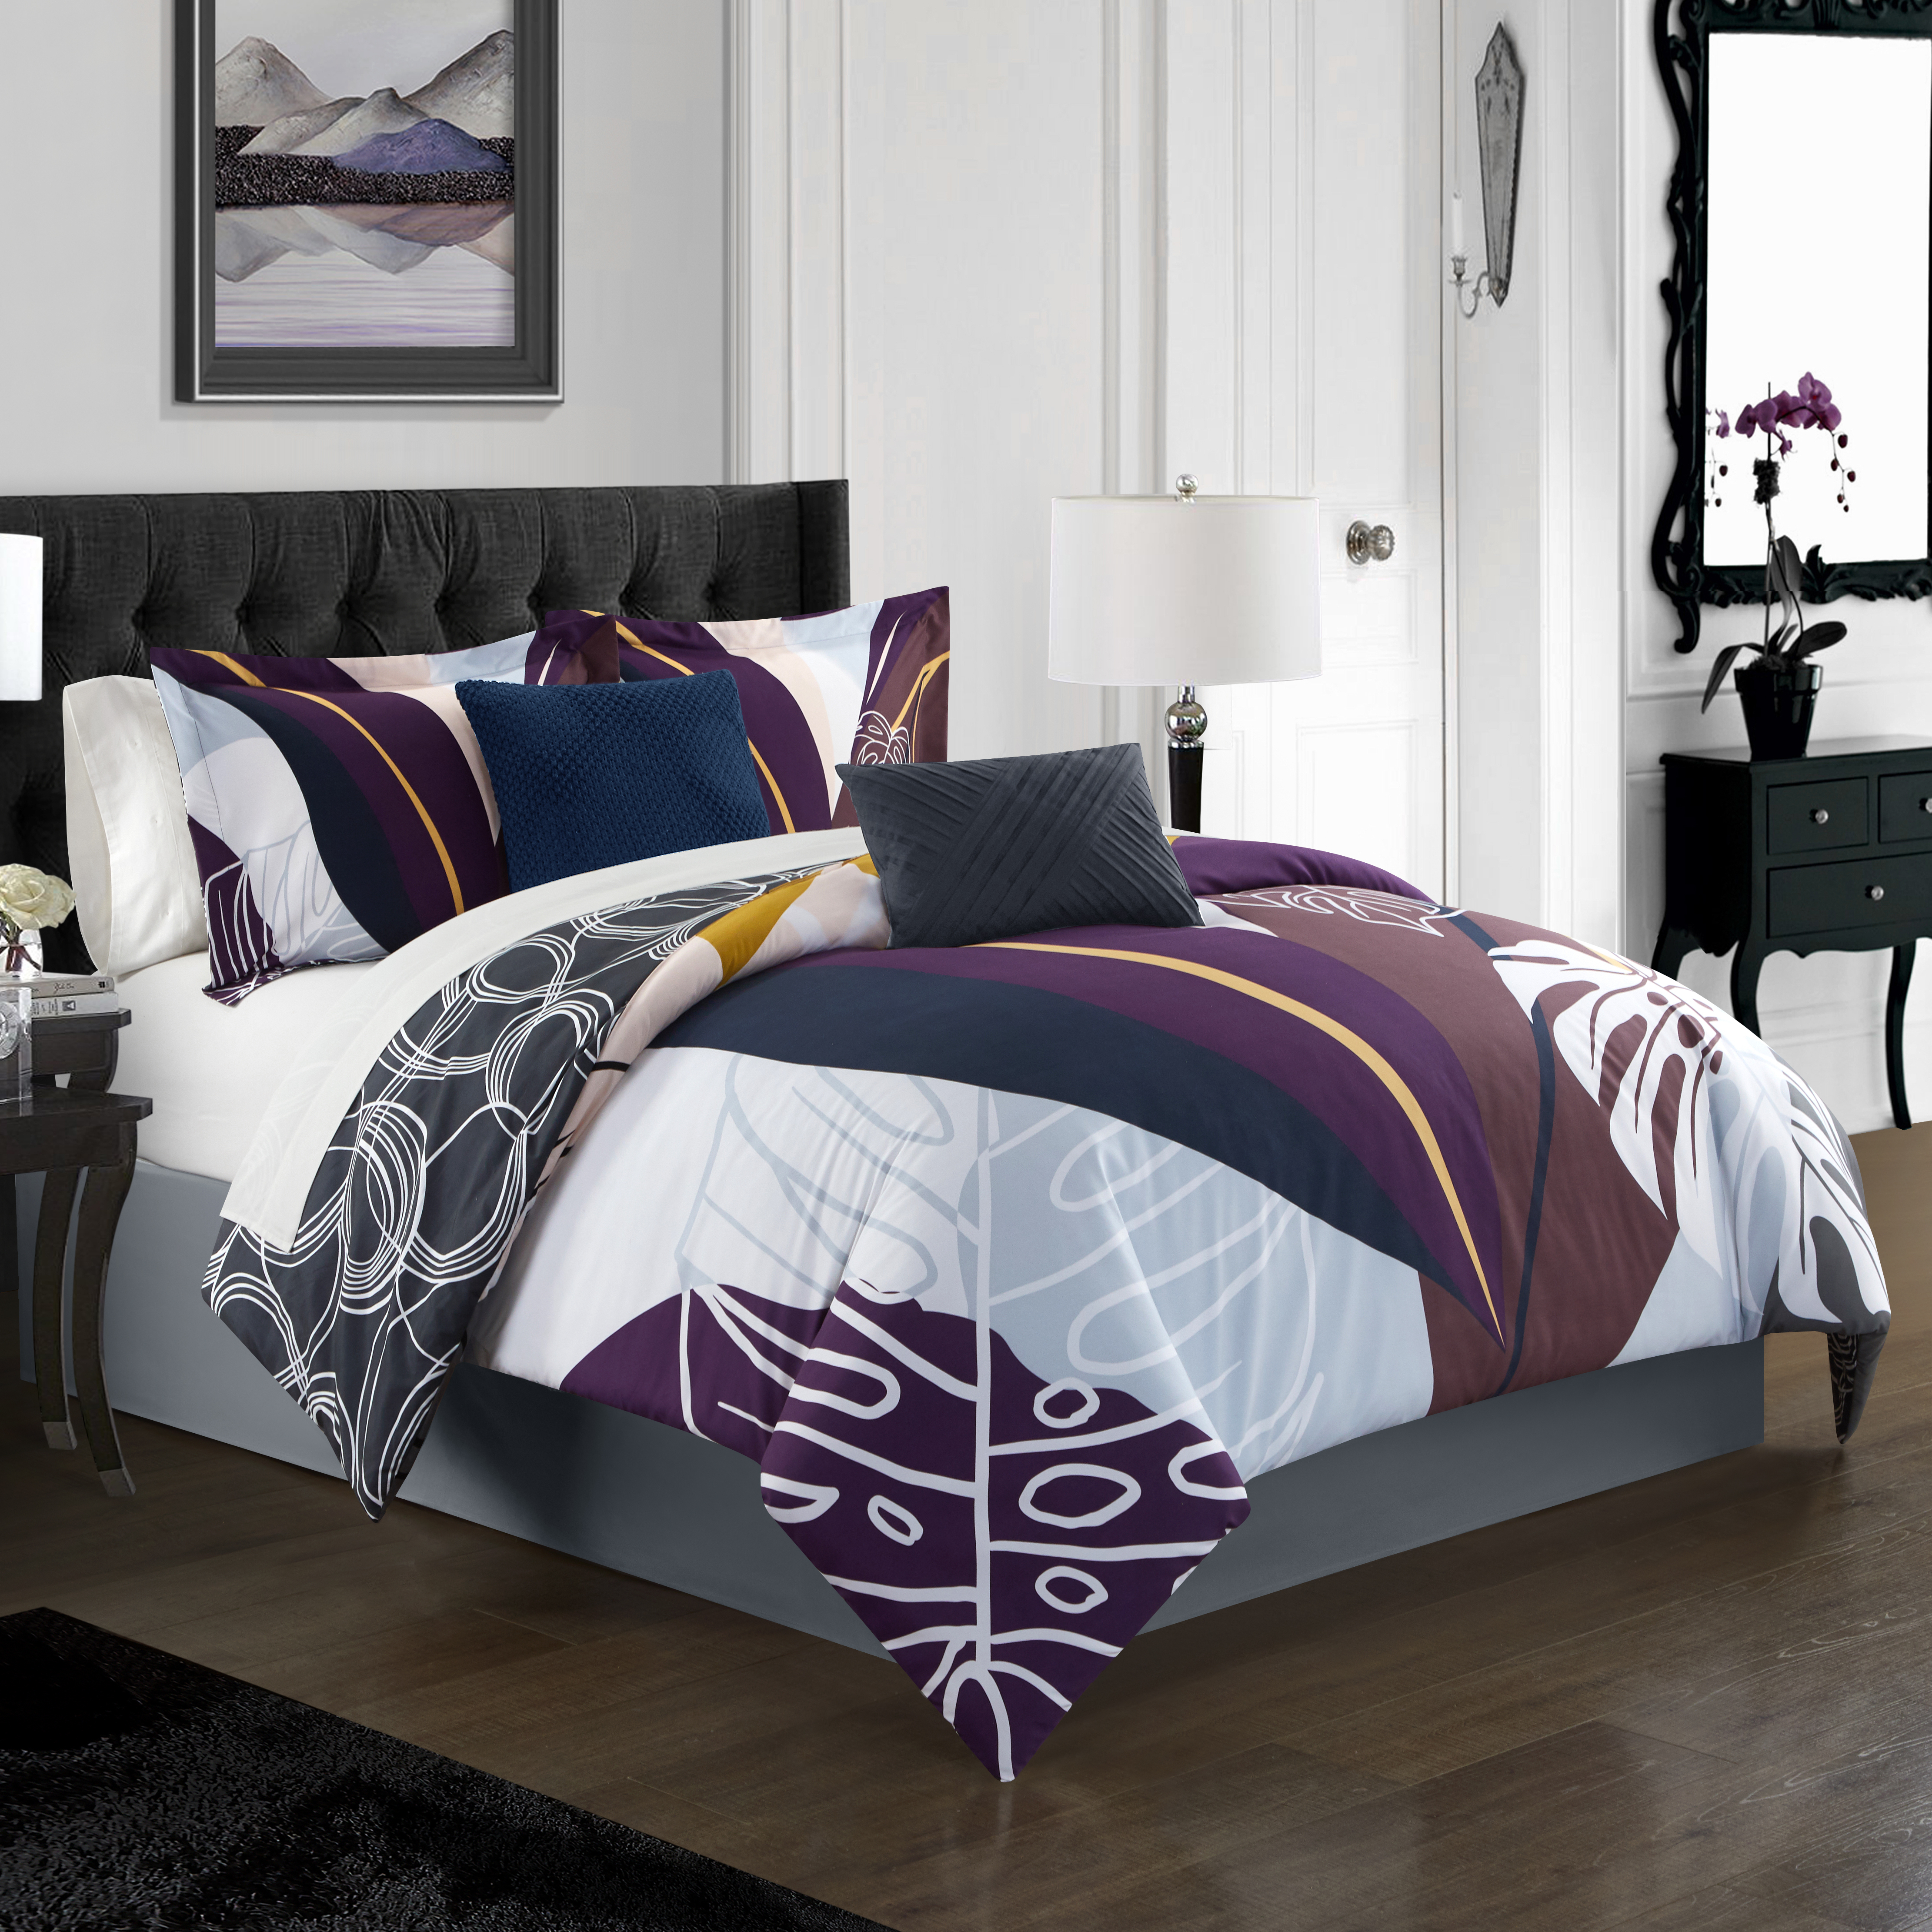 Emeraude 3 Piece Reversible Quilt Set Floral Print Cursive Script Design Bedding - Purple, King